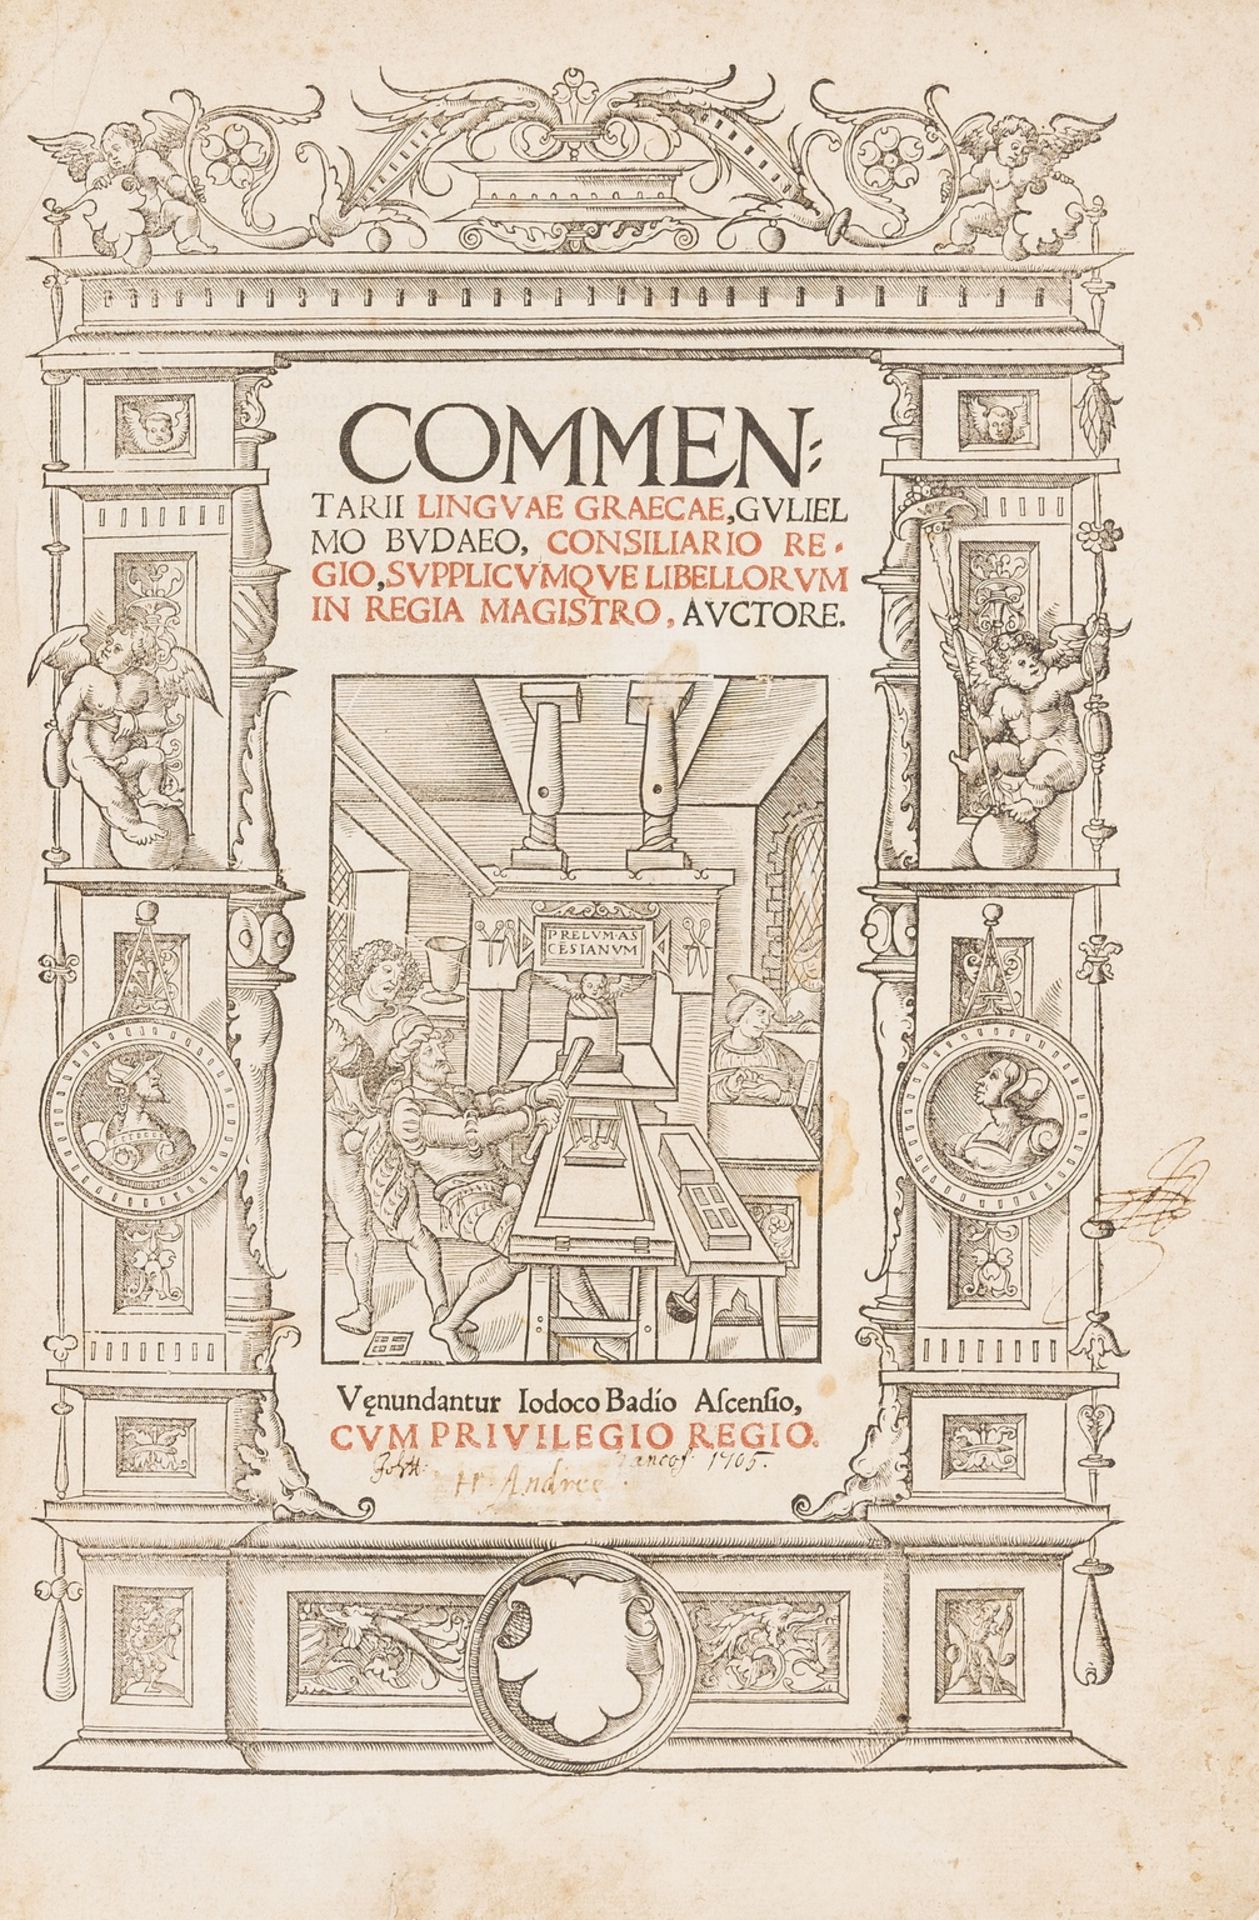 Budé (Guillaume) Commentarii linguae Graecae, first edition, Paris, Josse Badius, 1529.